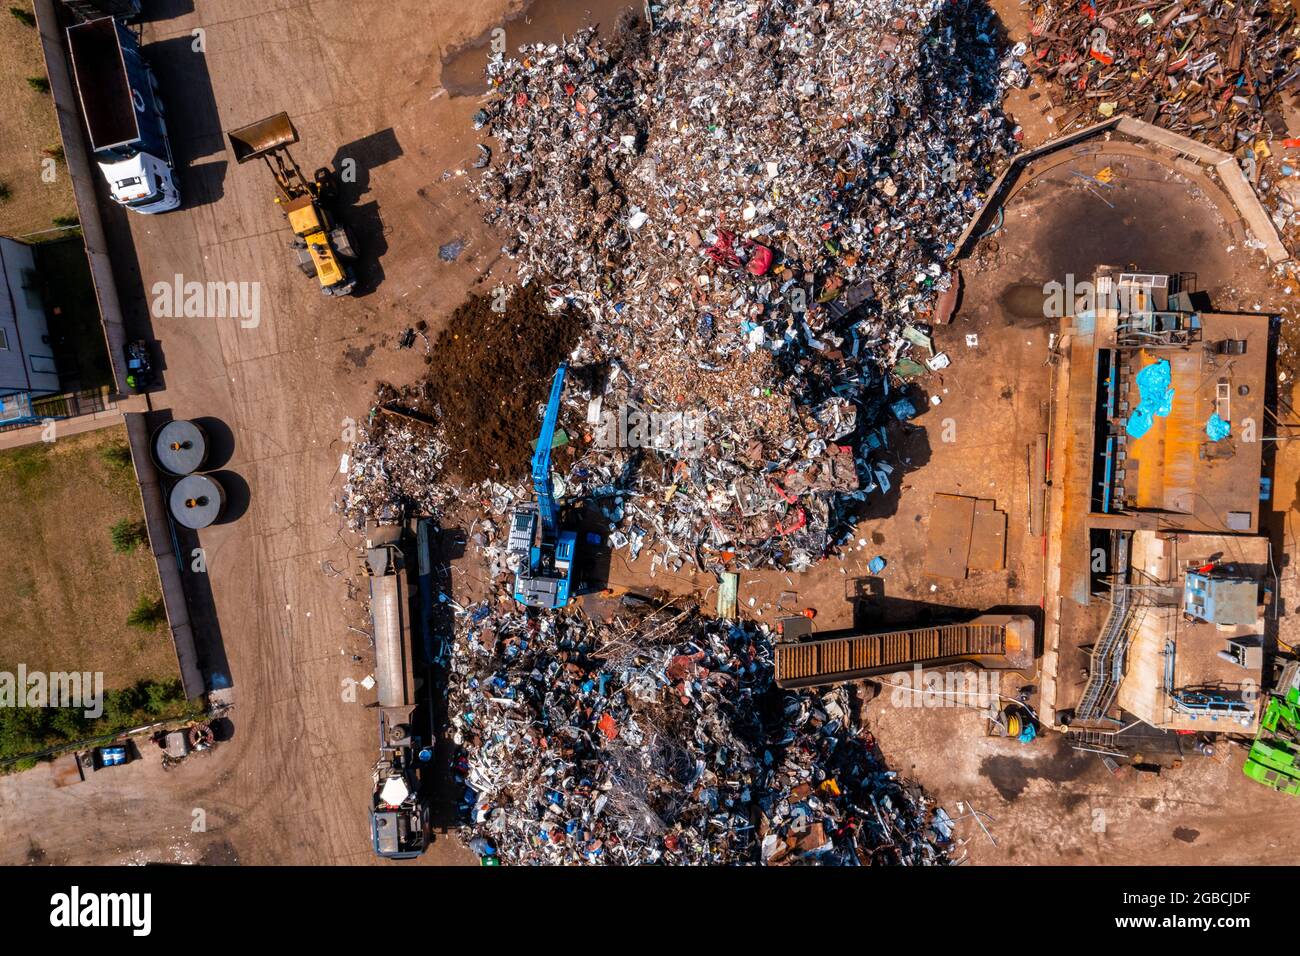 Vieilles voitures endommagées sur le chantier en attente de recyclage Banque D'Images